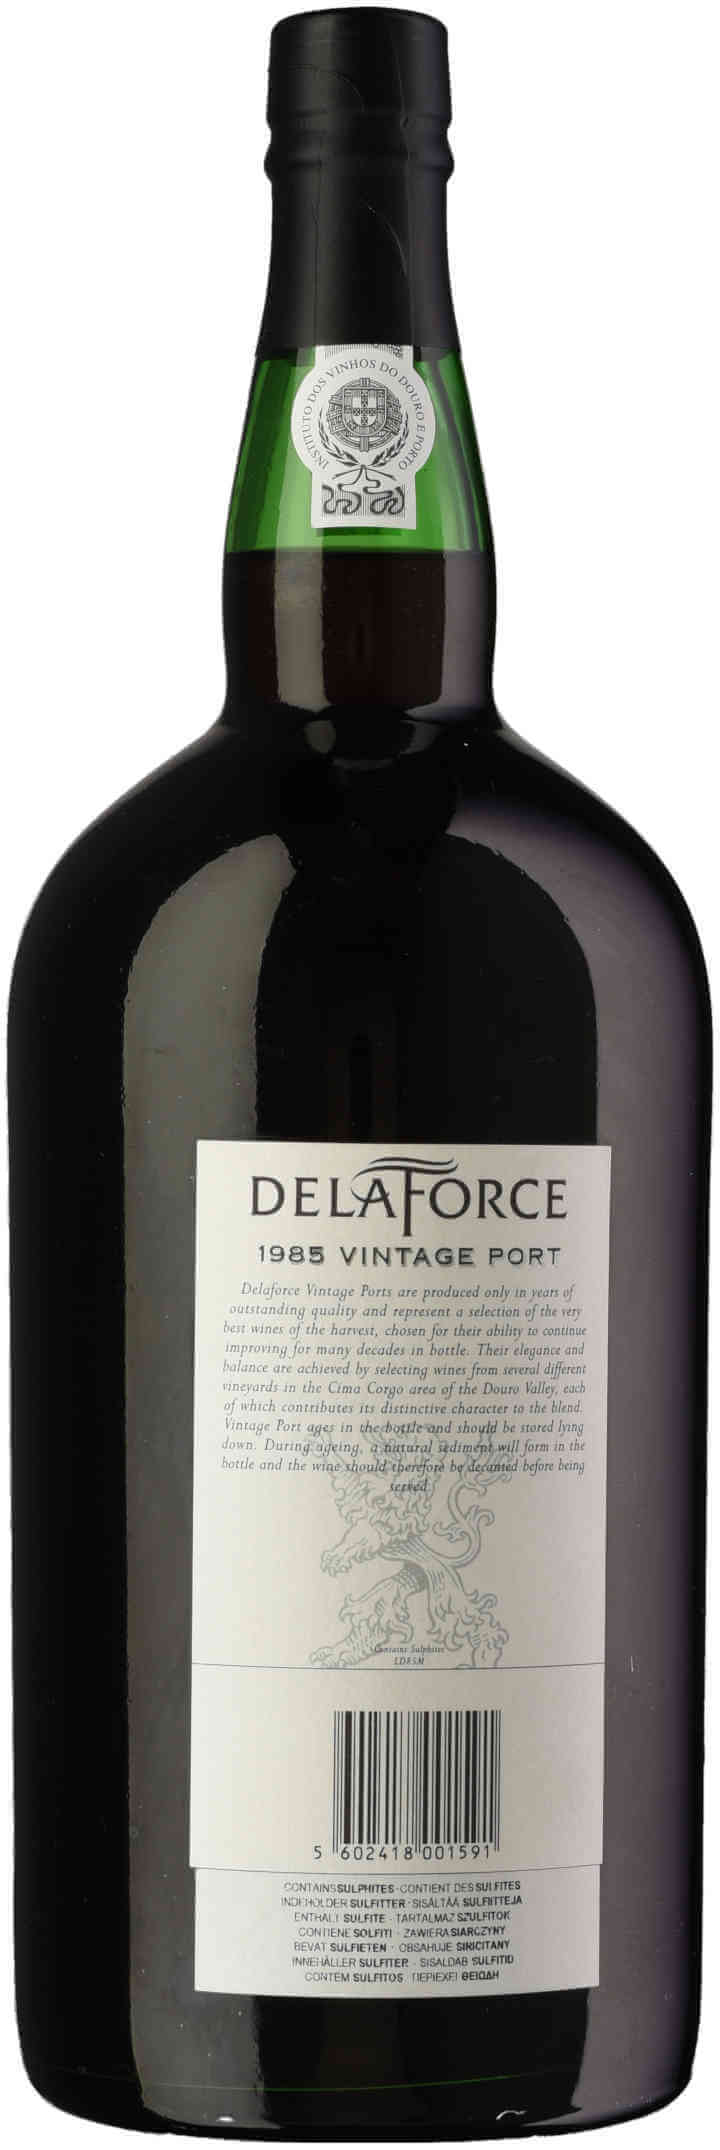 Delaforce-Vintage-Port-1985-150cl-back